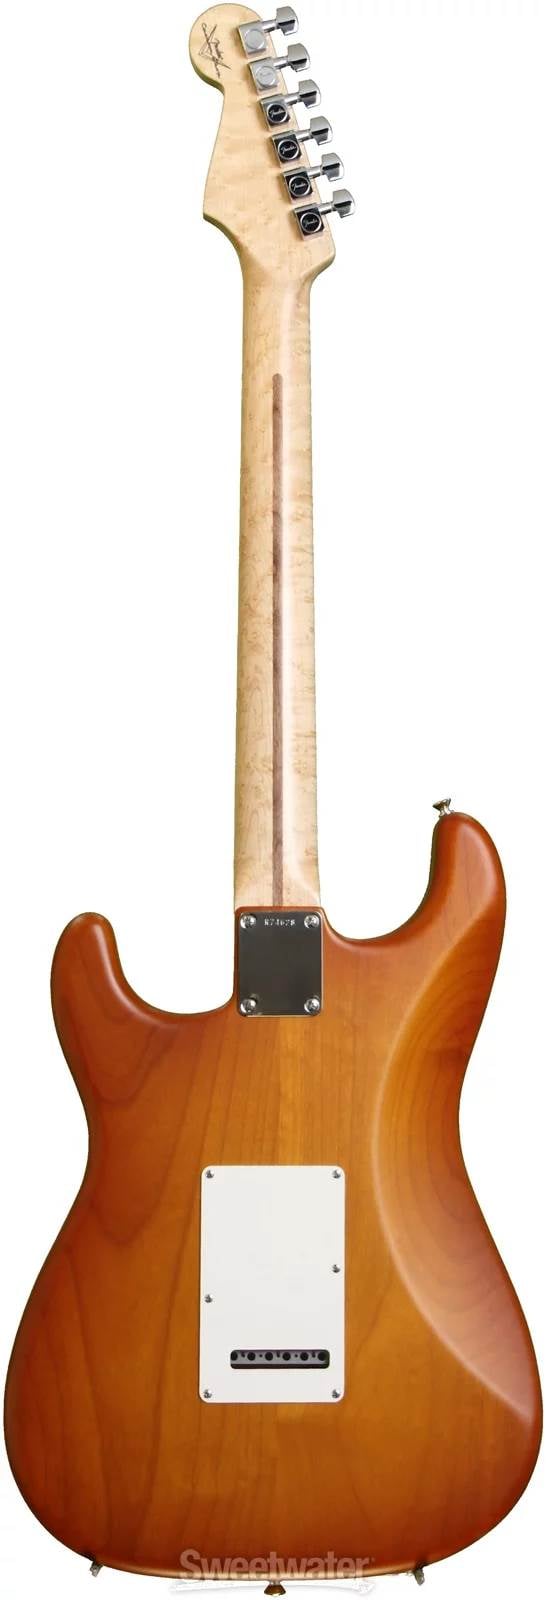 2014 Custom Deluxe Stratocaster back